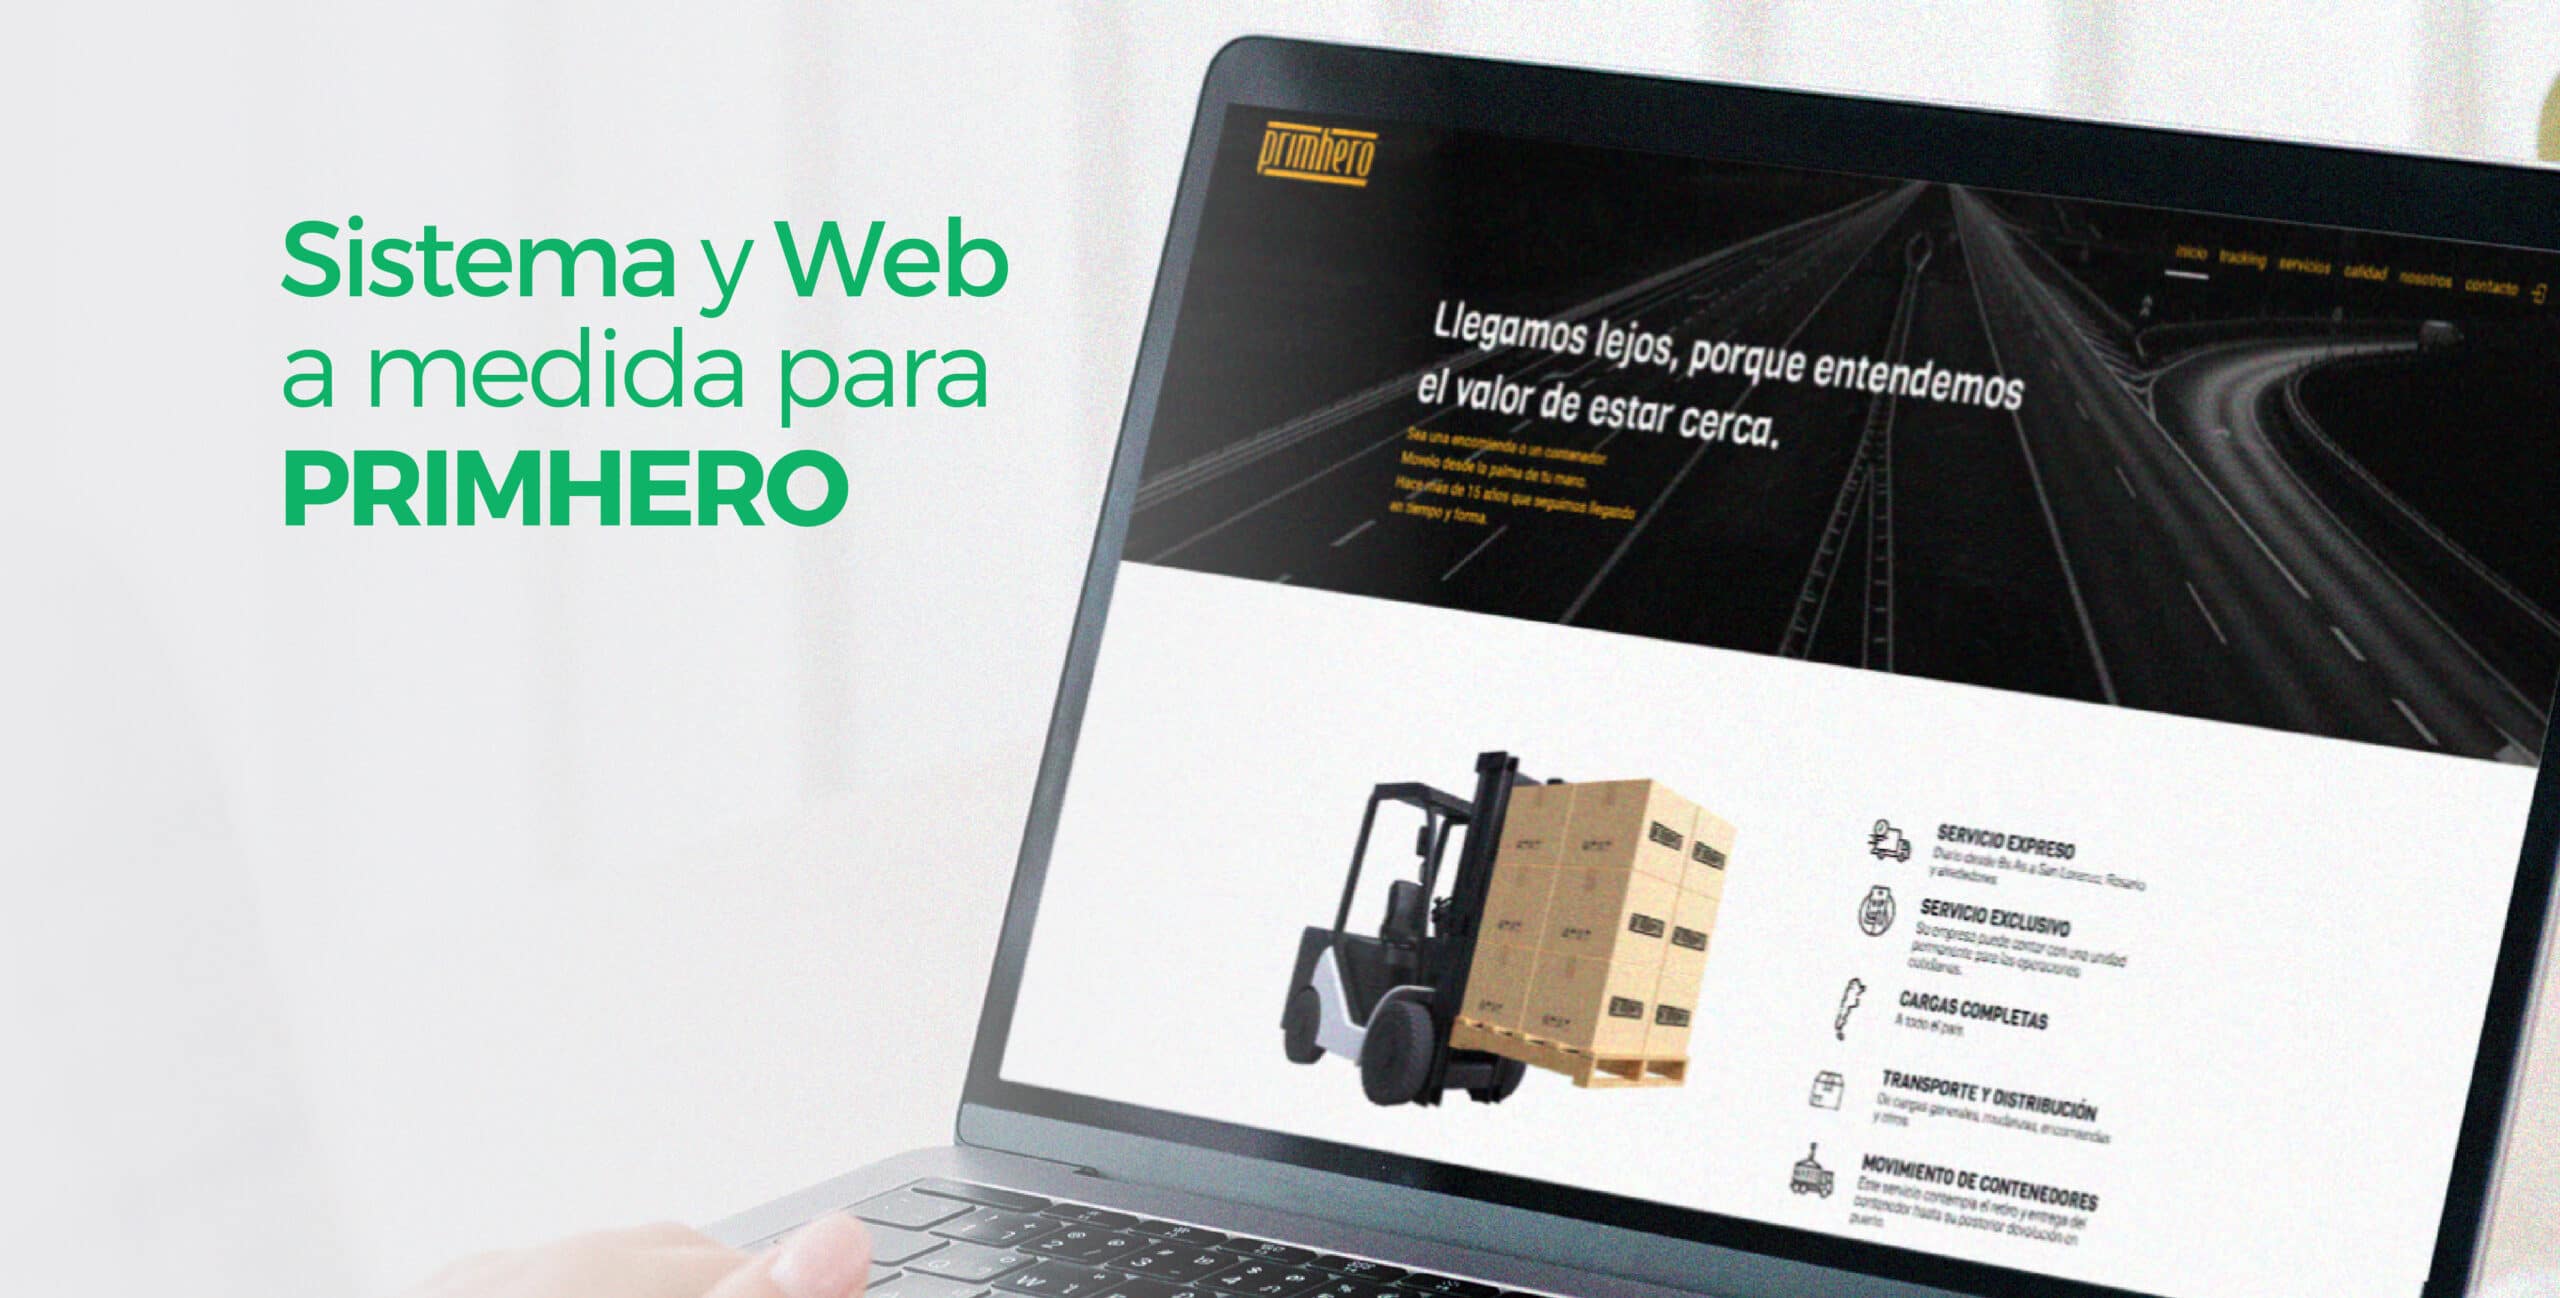 Primhero: sitio web y sistema a medida para ofrecer un servicio de mayor calidad